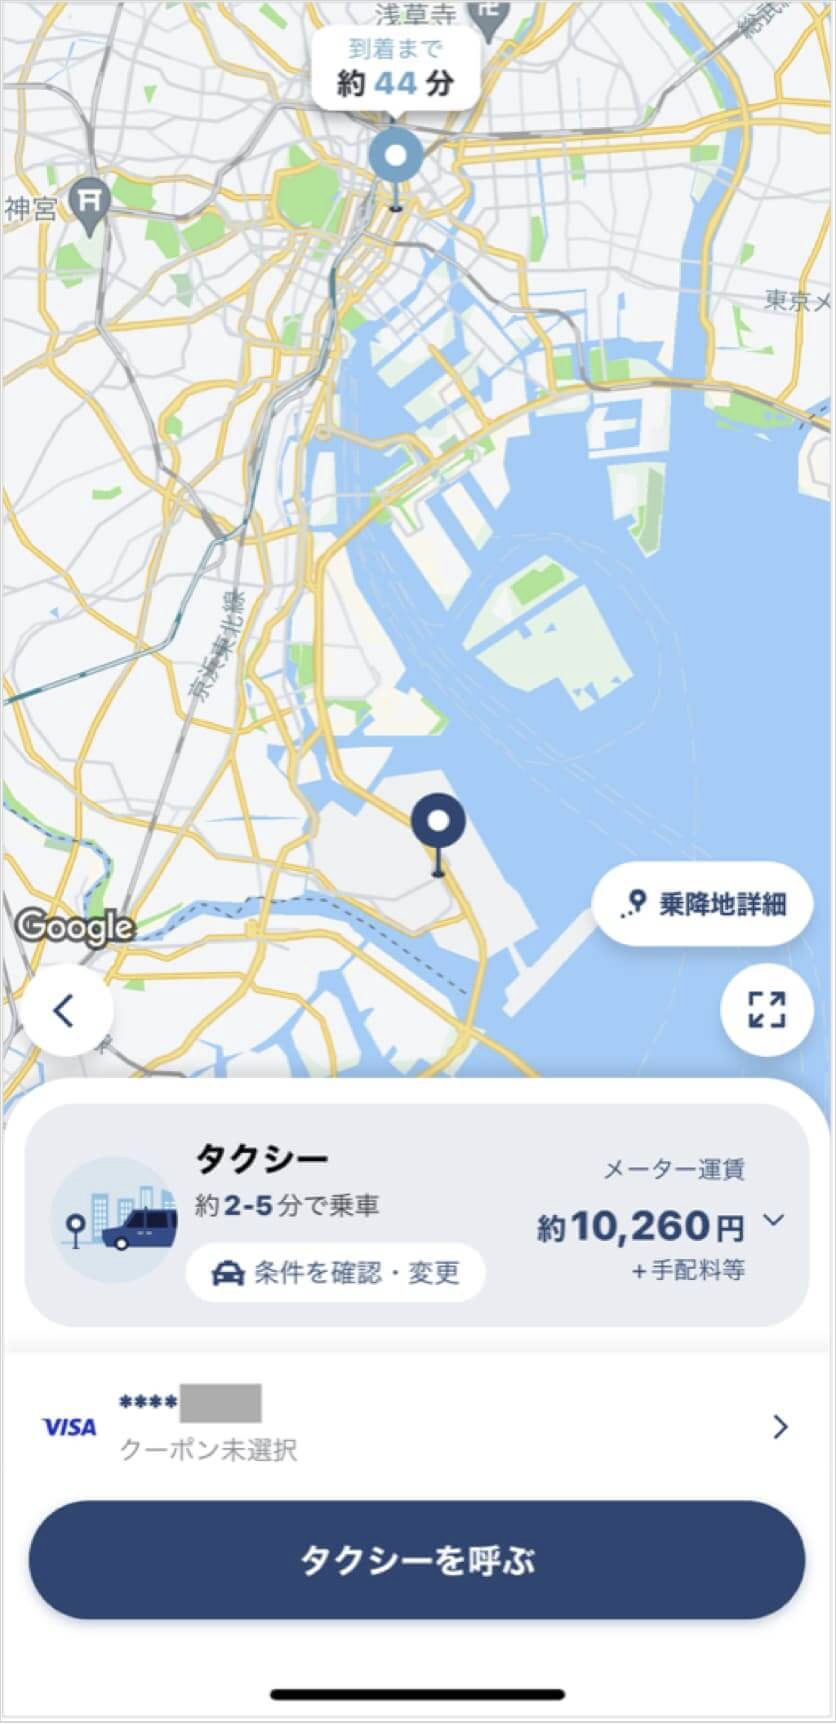 羽田空港から日本橋までのタクシー料金・所要時間まとめ